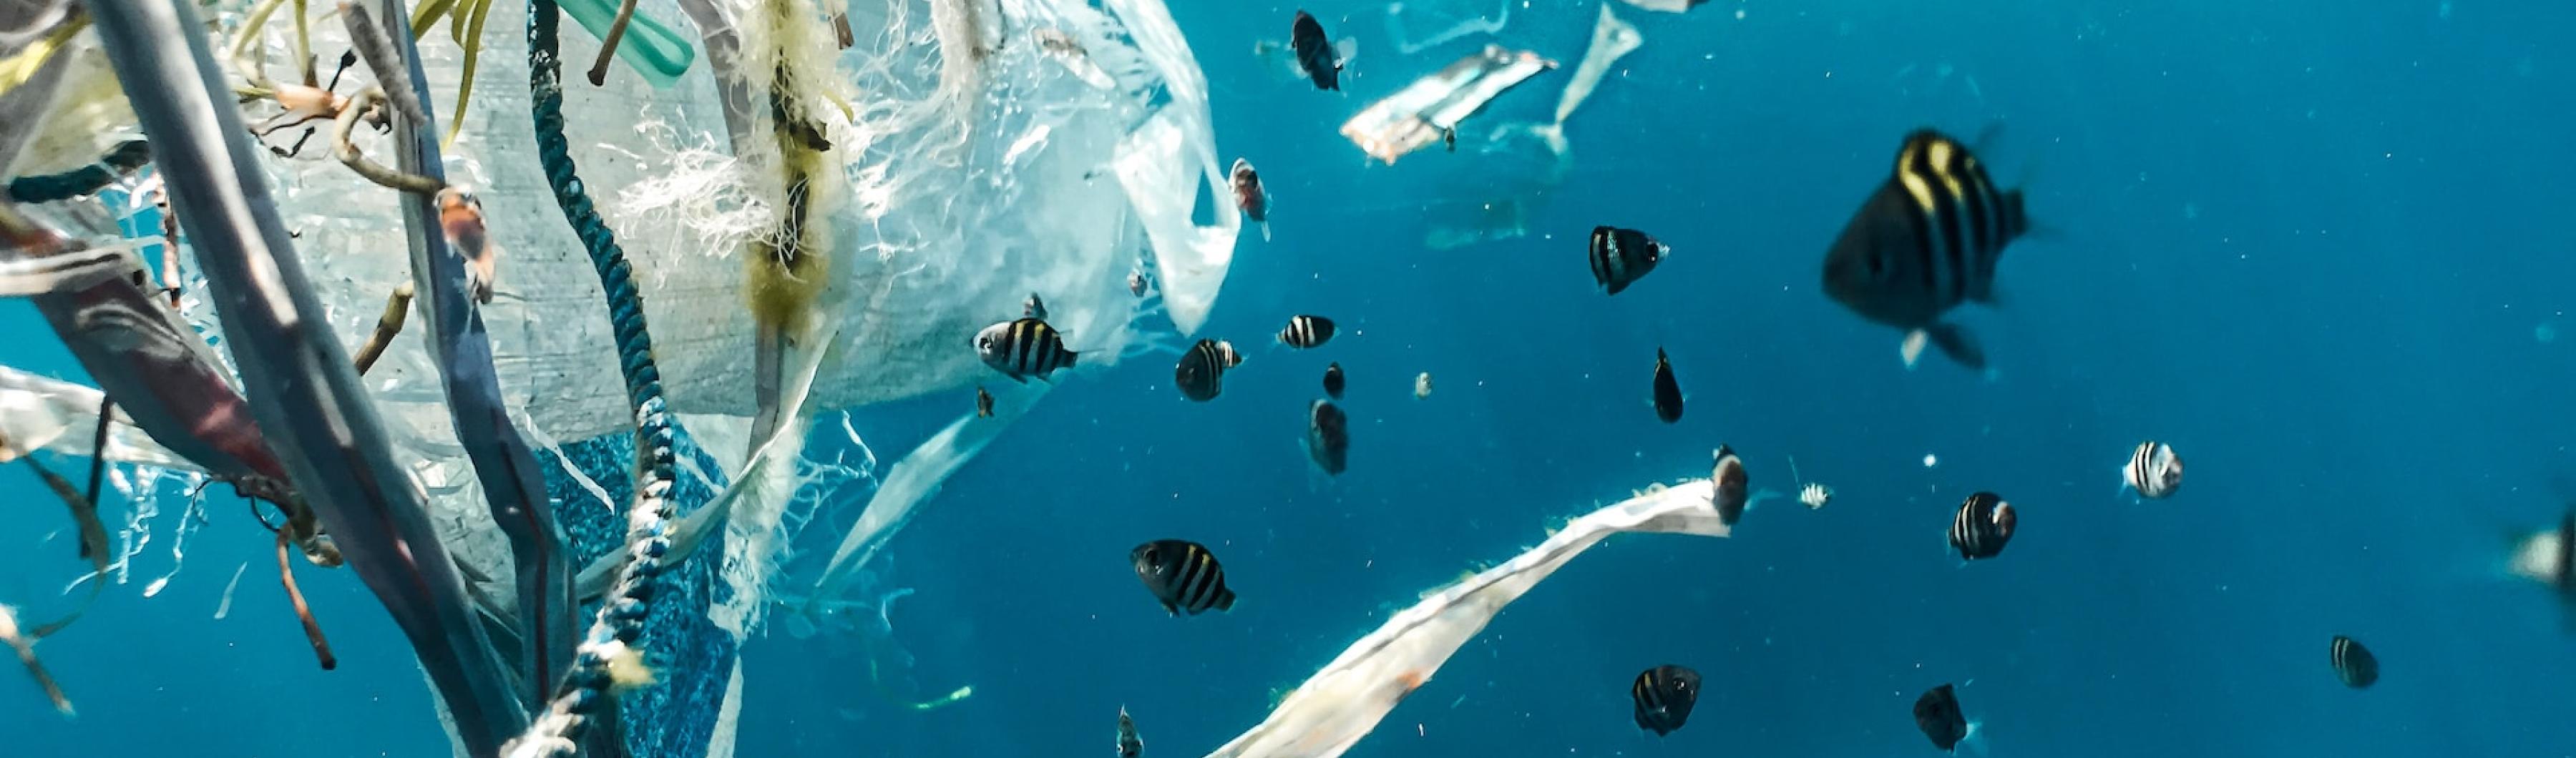 Peces en el océano con contaminación por plásticos